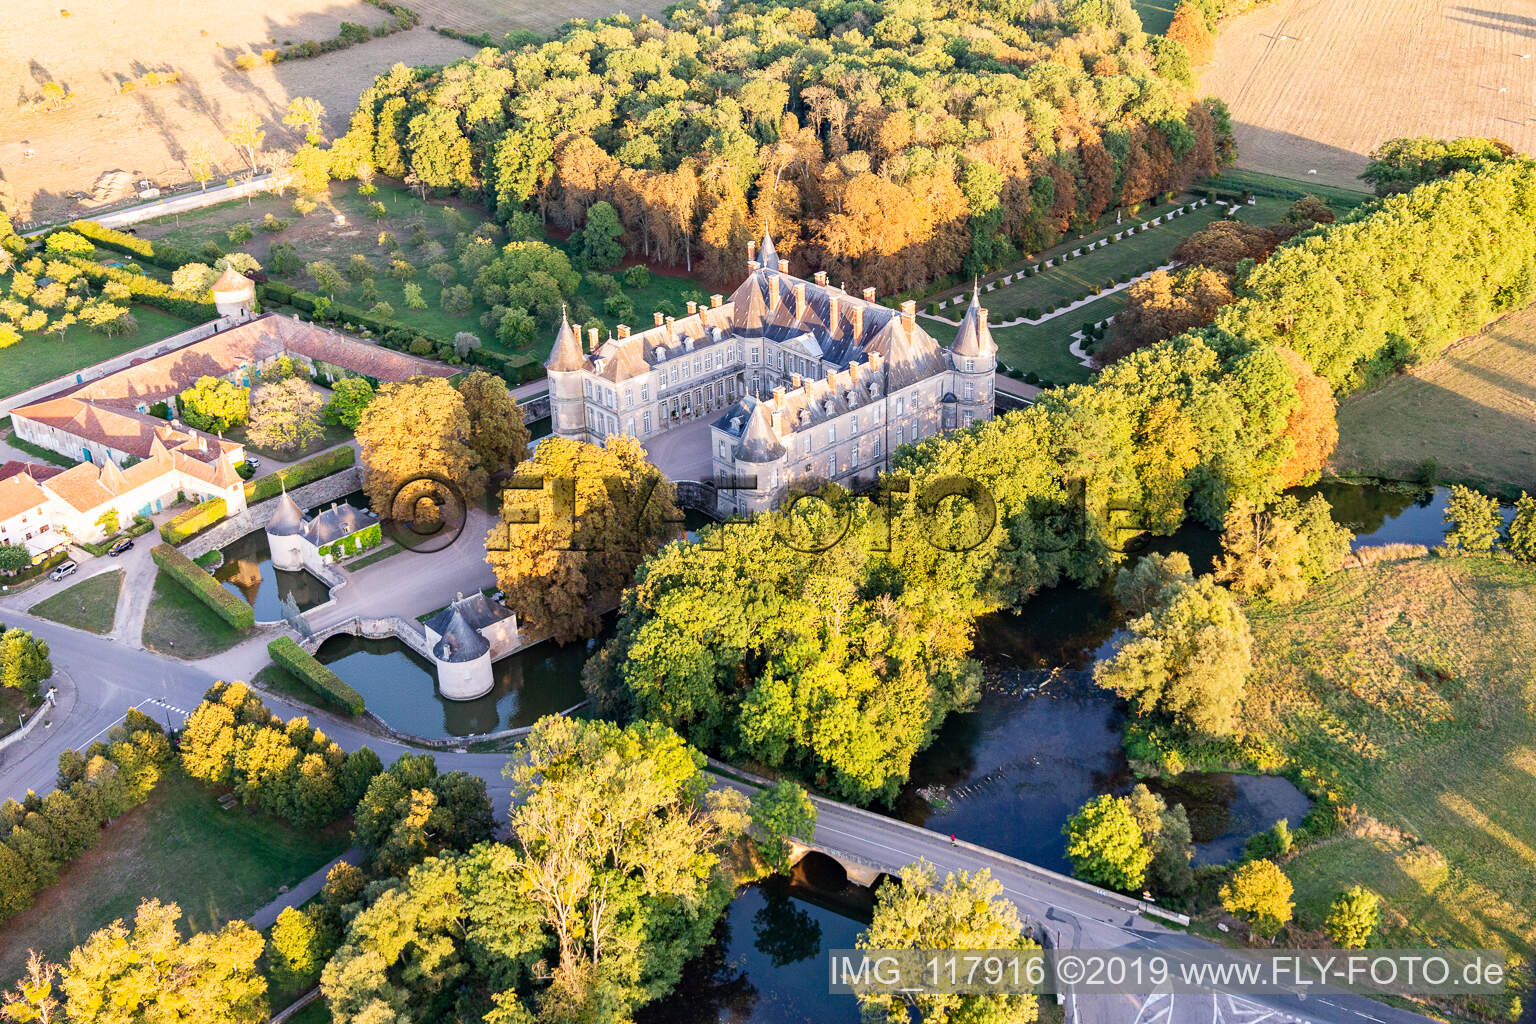 Chateau de Haroué im Bundesland Meurthe-et-Moselle, Frankreich vom Flugzeug aus